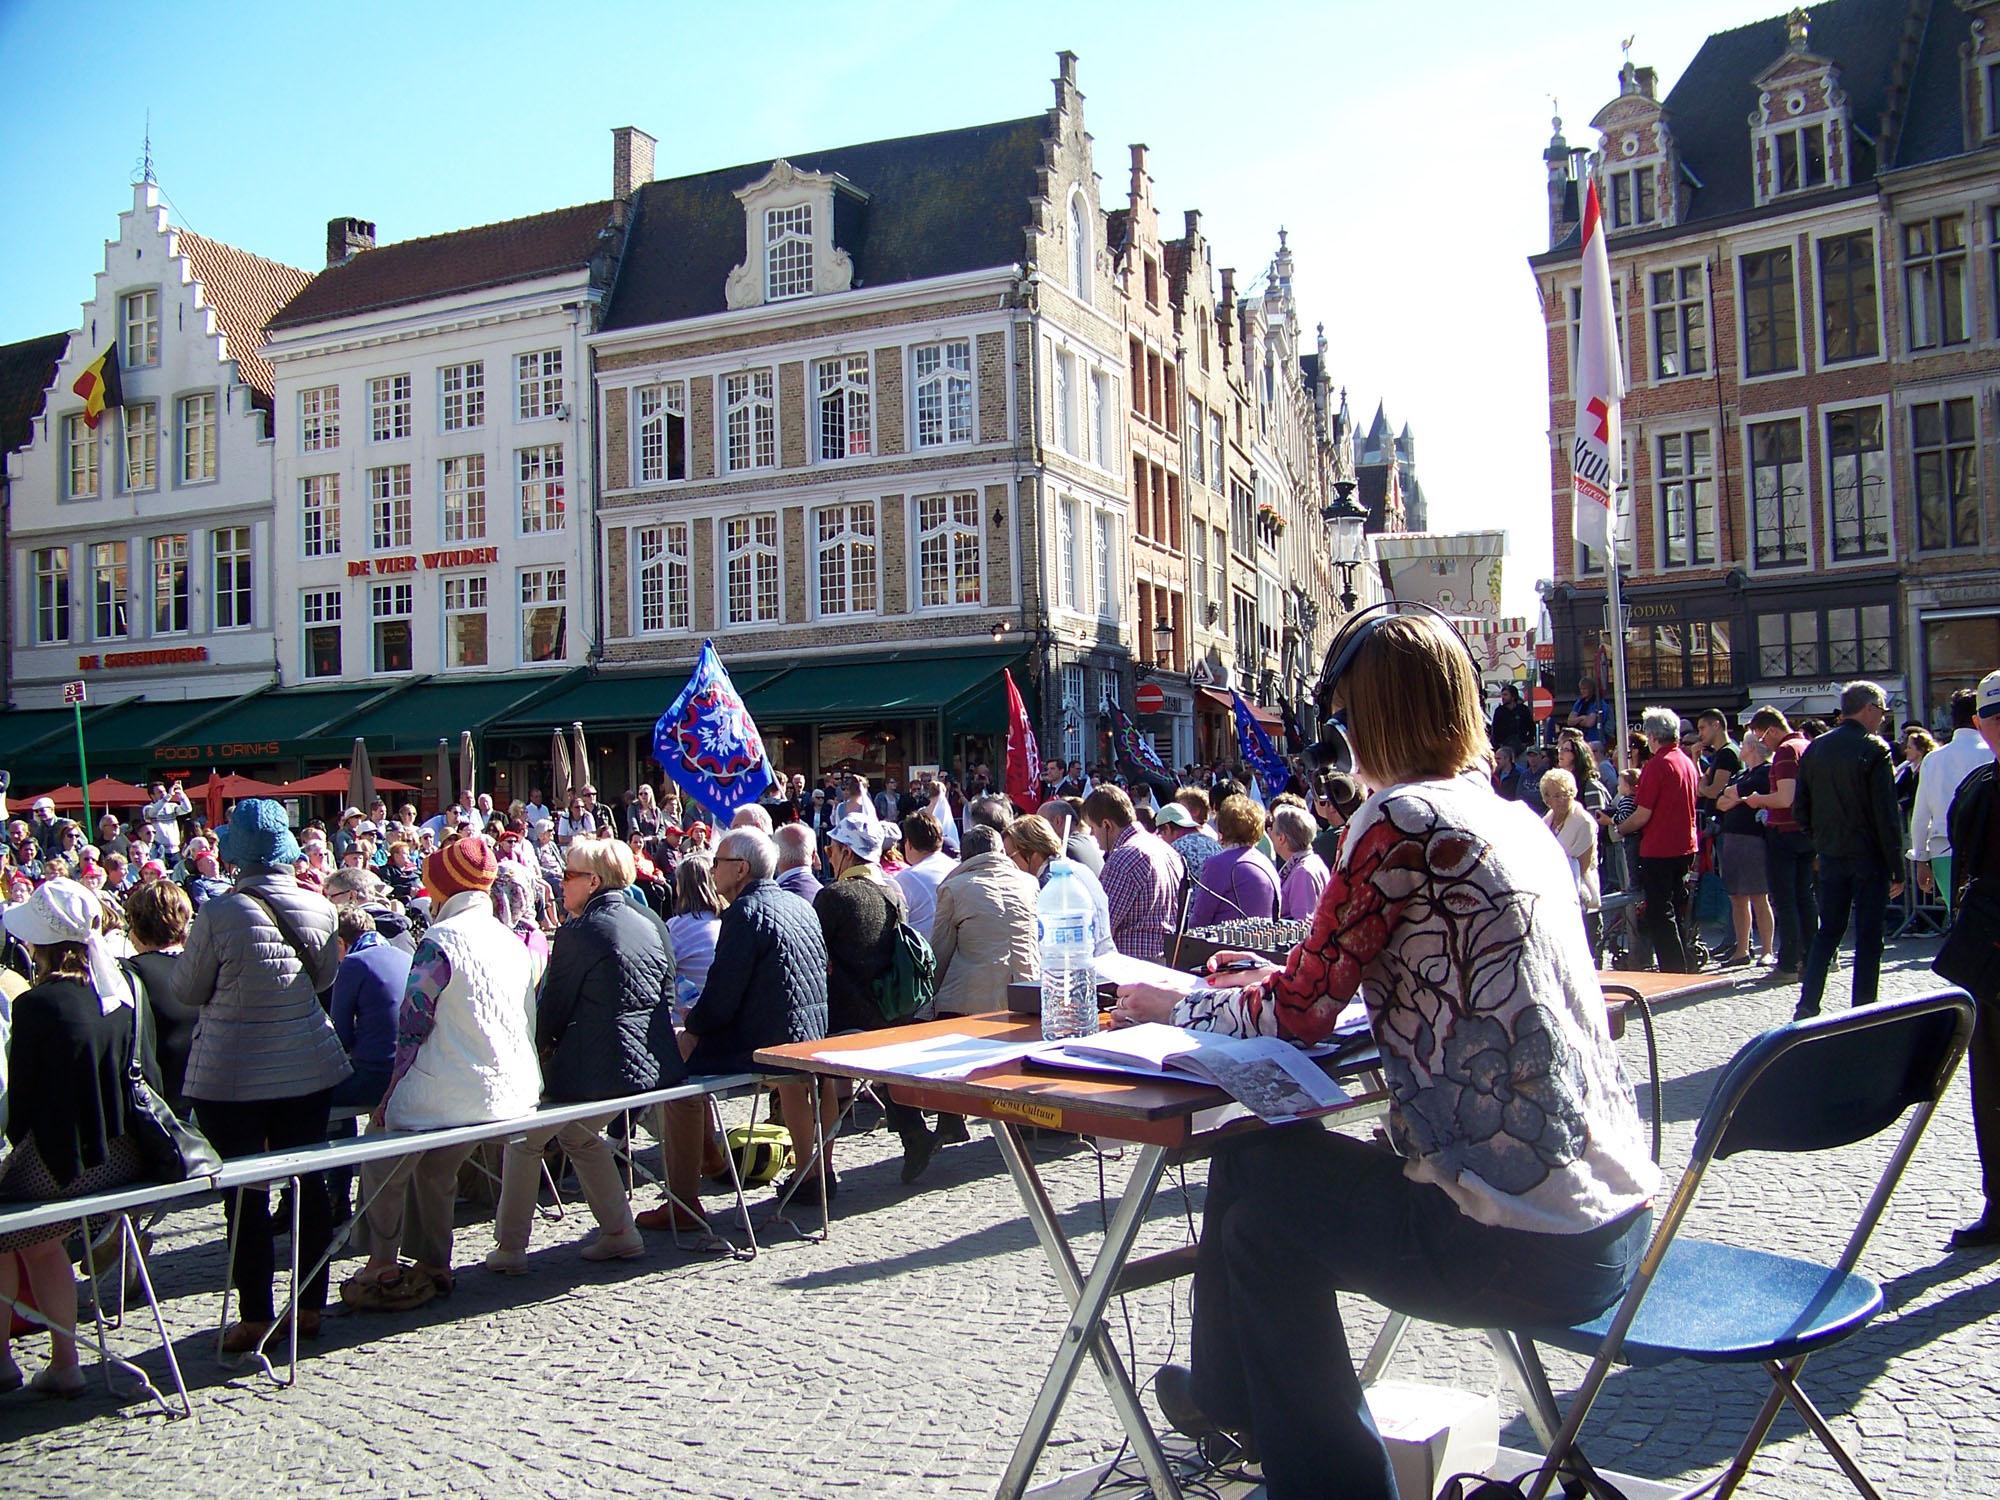 Susanne zit aan een tafel op een klein podium achter de rijen met bankjes voor het publiek. Op de achtergrond trekt de processie voorbij. Een groep vendelzwaaiers houdt metershoge gekleurde vlaggen op.